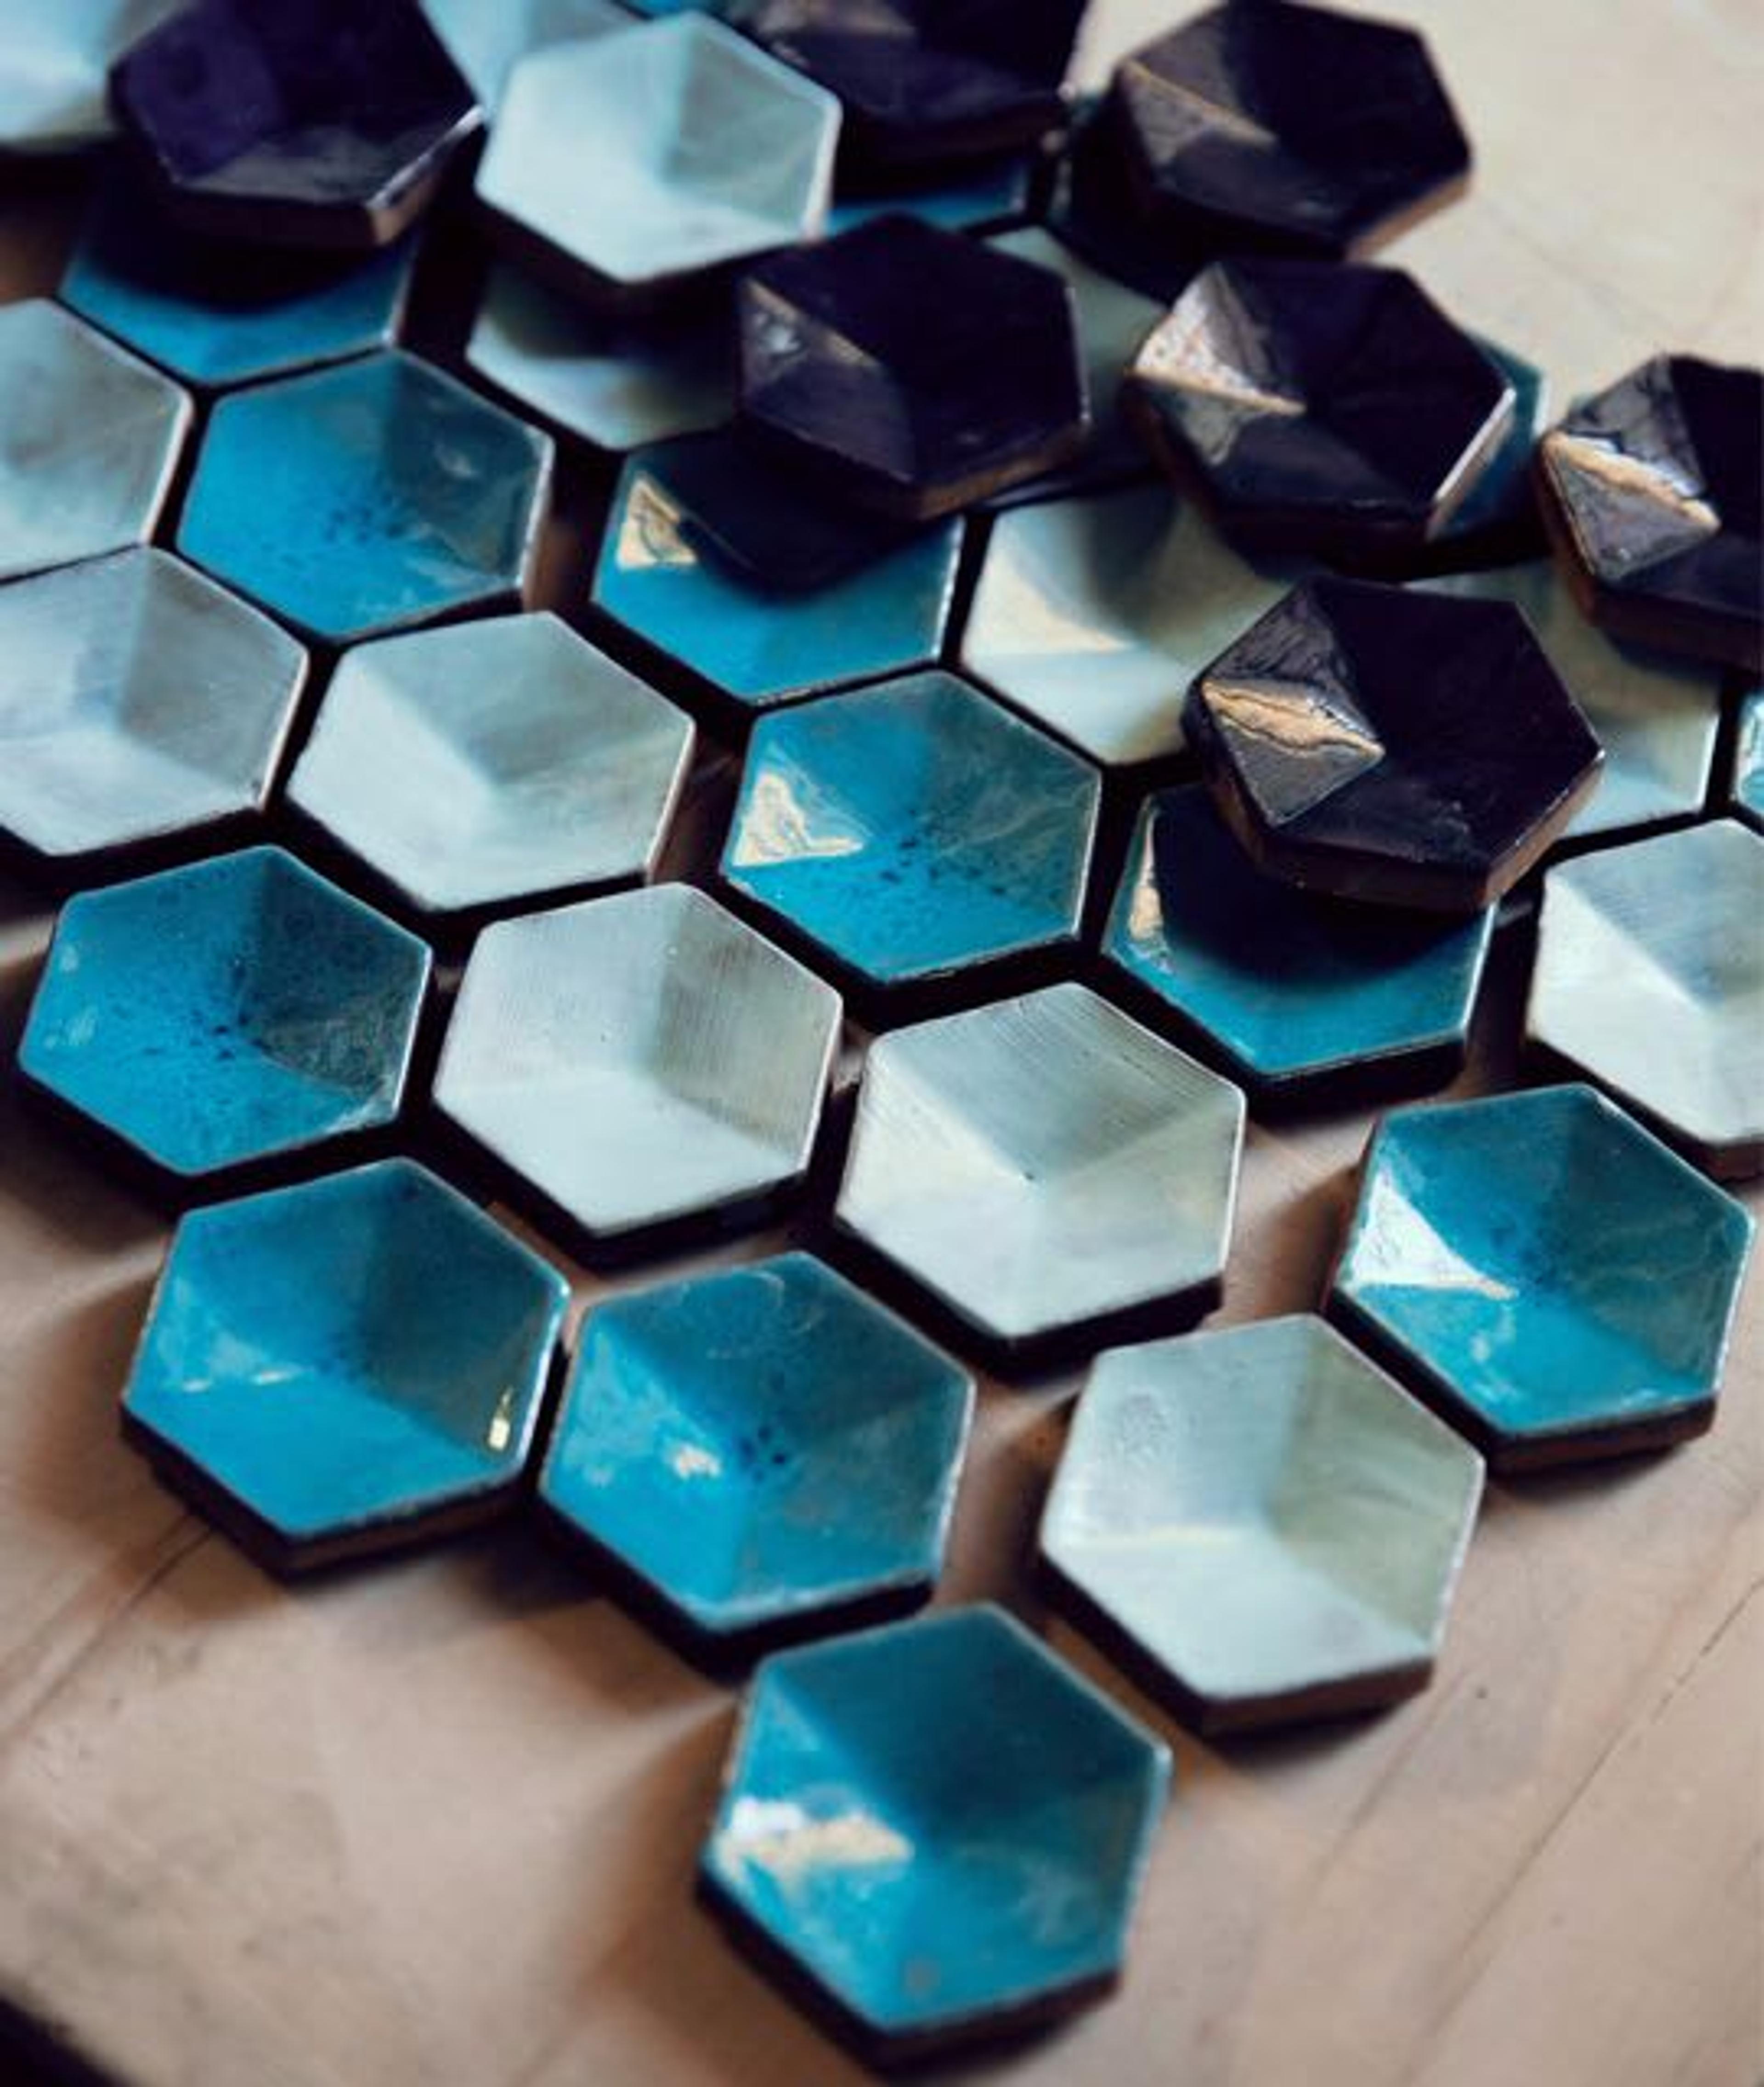 Creating unique ceramic mosaics at BottegaNove workshop